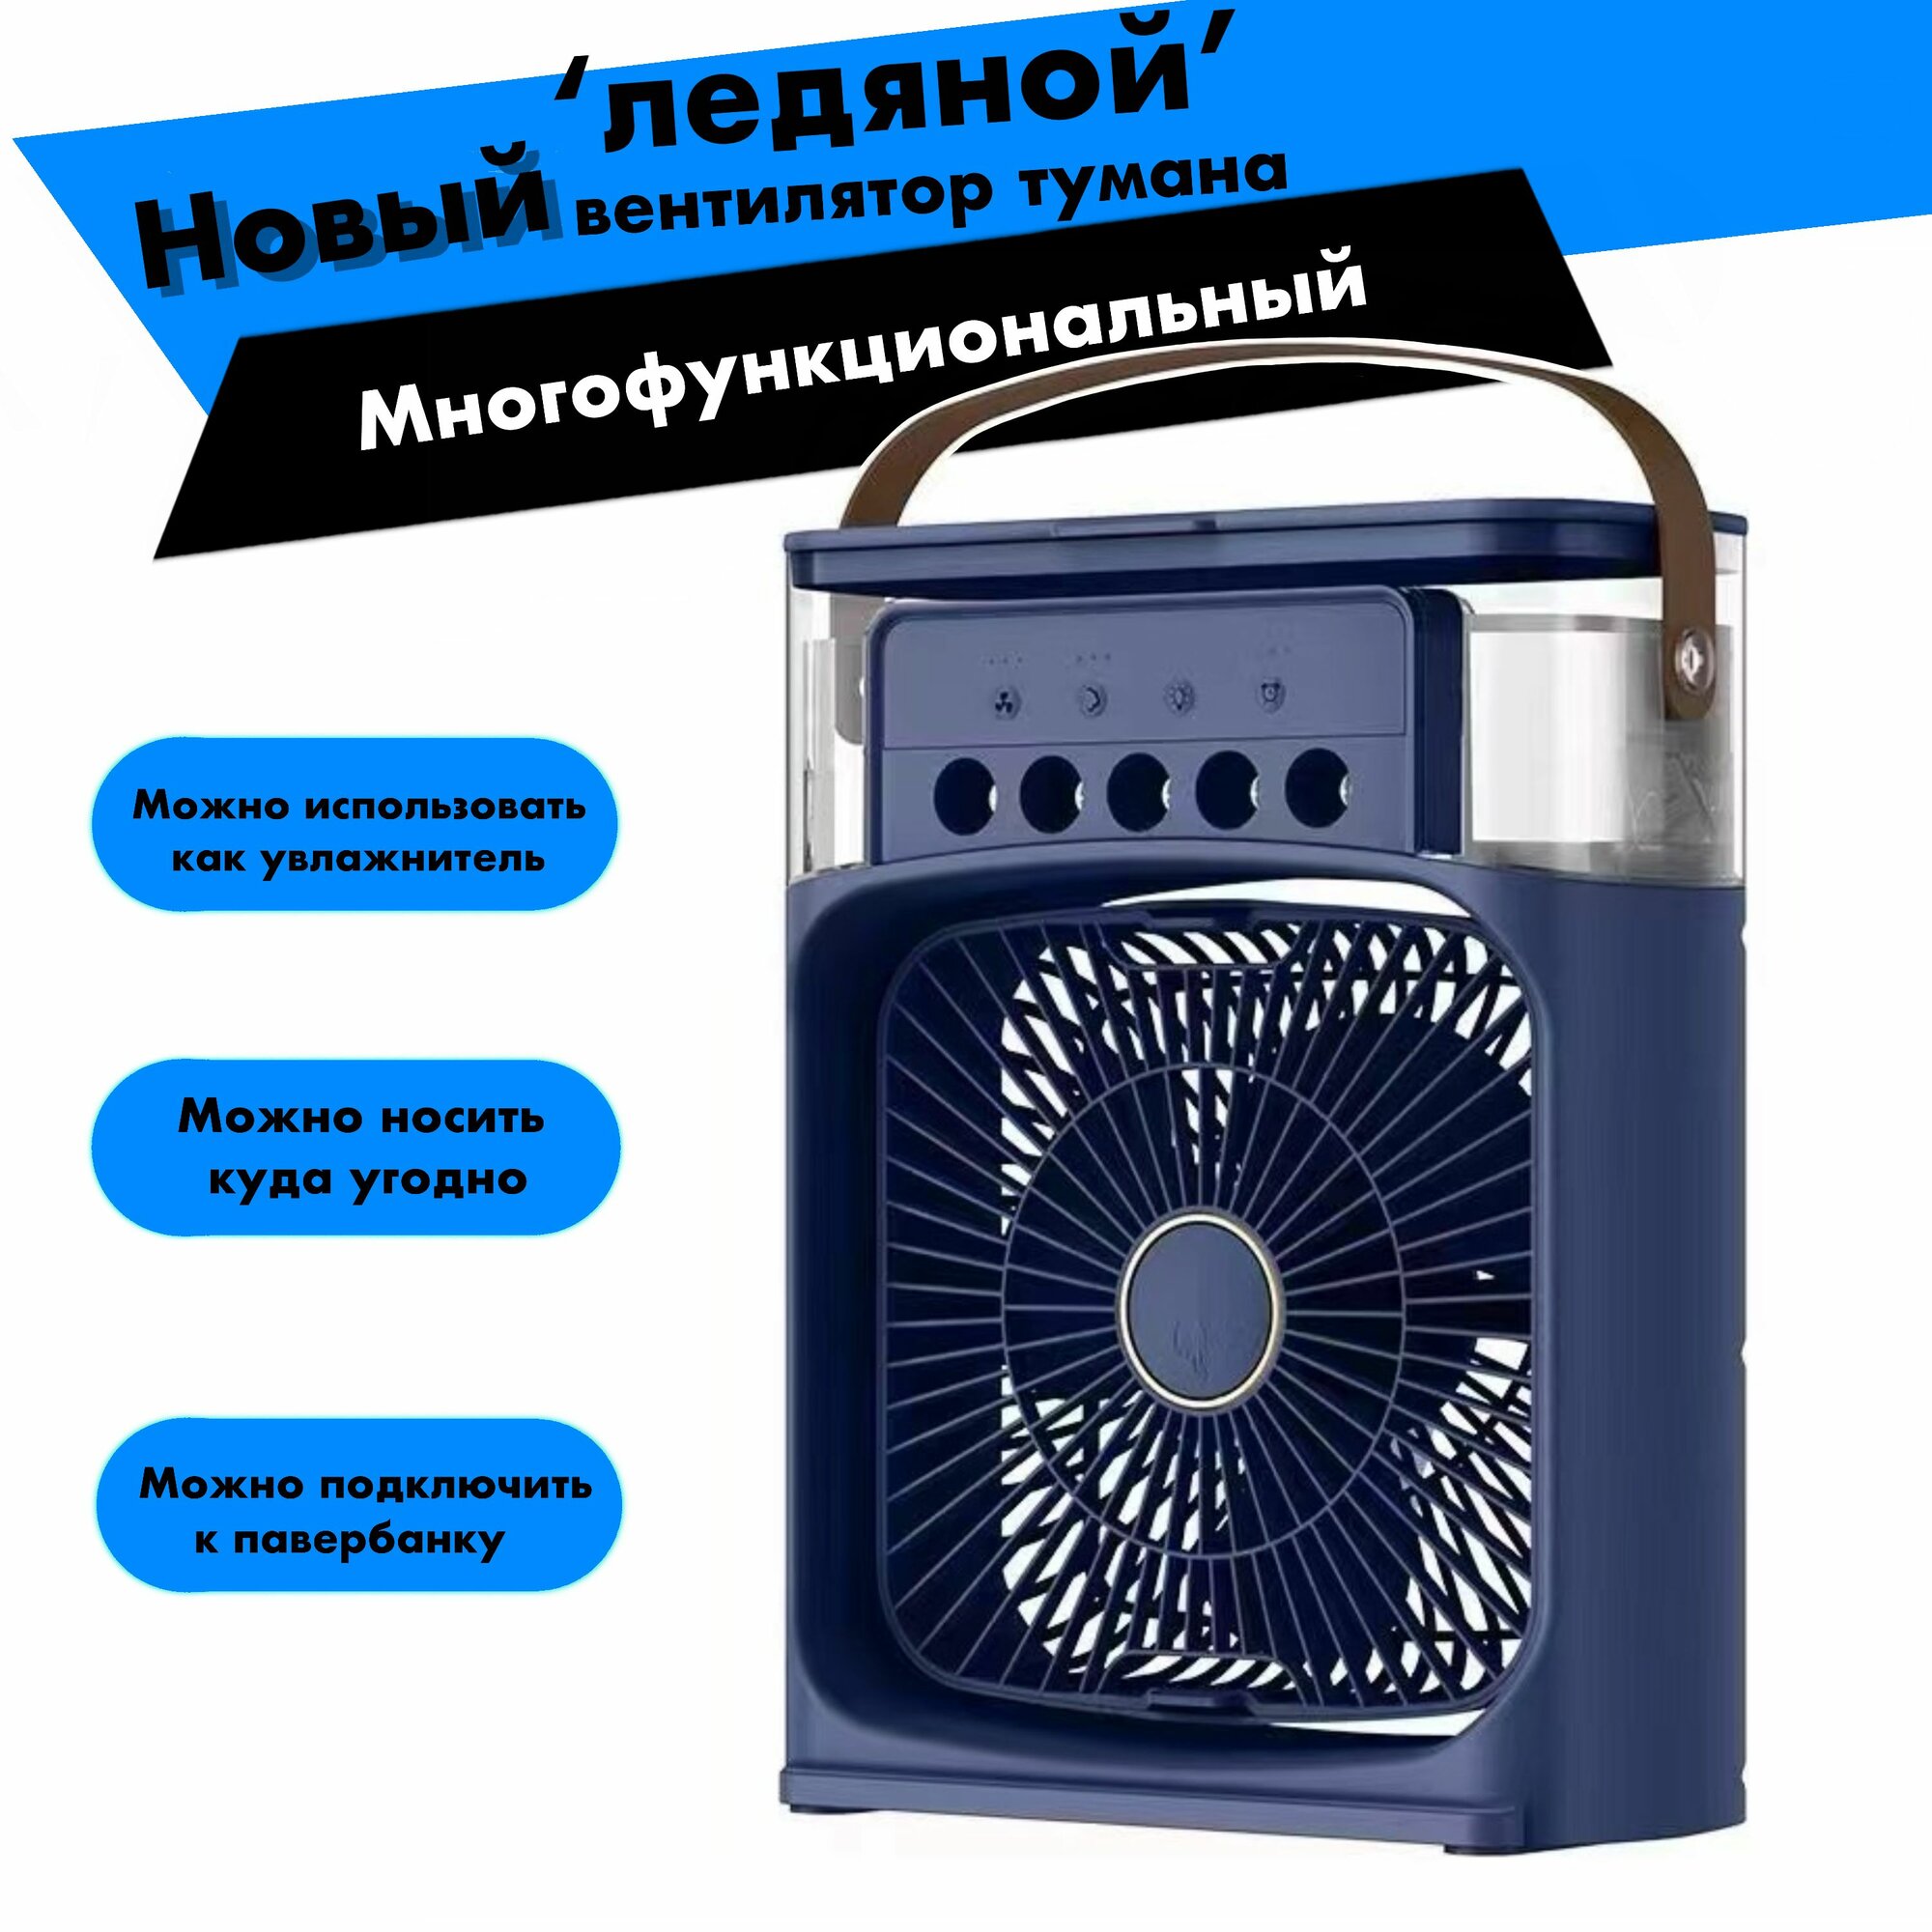 Настольный вентилятор / увлажнитель / охладитель воздуха. Мини-кондиционер. Портативный / цвет синий